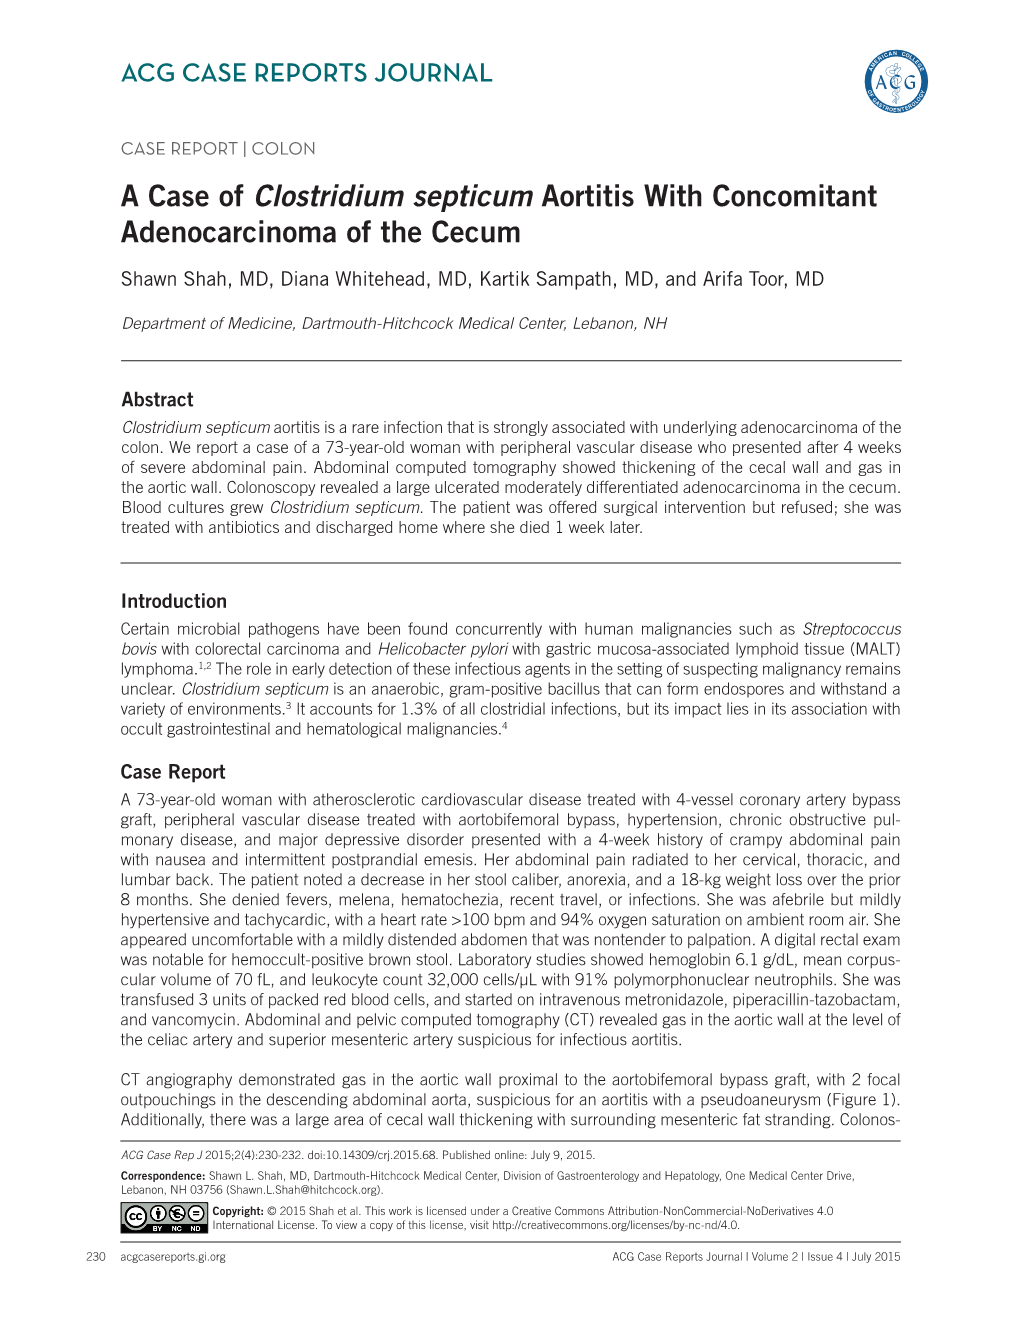 A Case of Clostridium Septicum Aortitis with Concomitant Adenocarcinoma of the Cecum